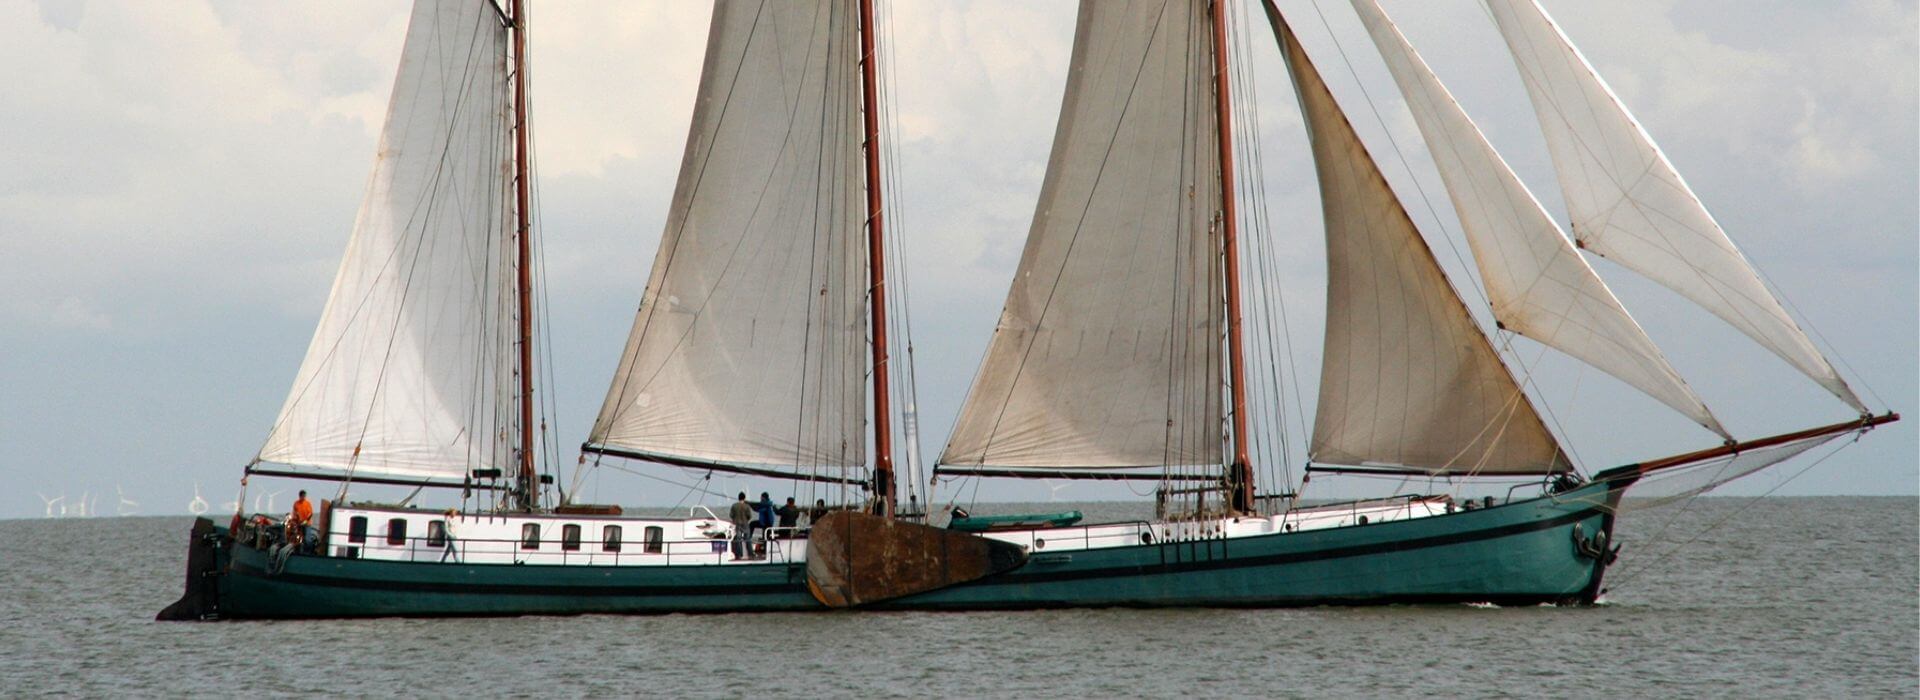 Segelschiff mieten Ijsselmeer - Teamevent und Ausflug buchen bei bceed events